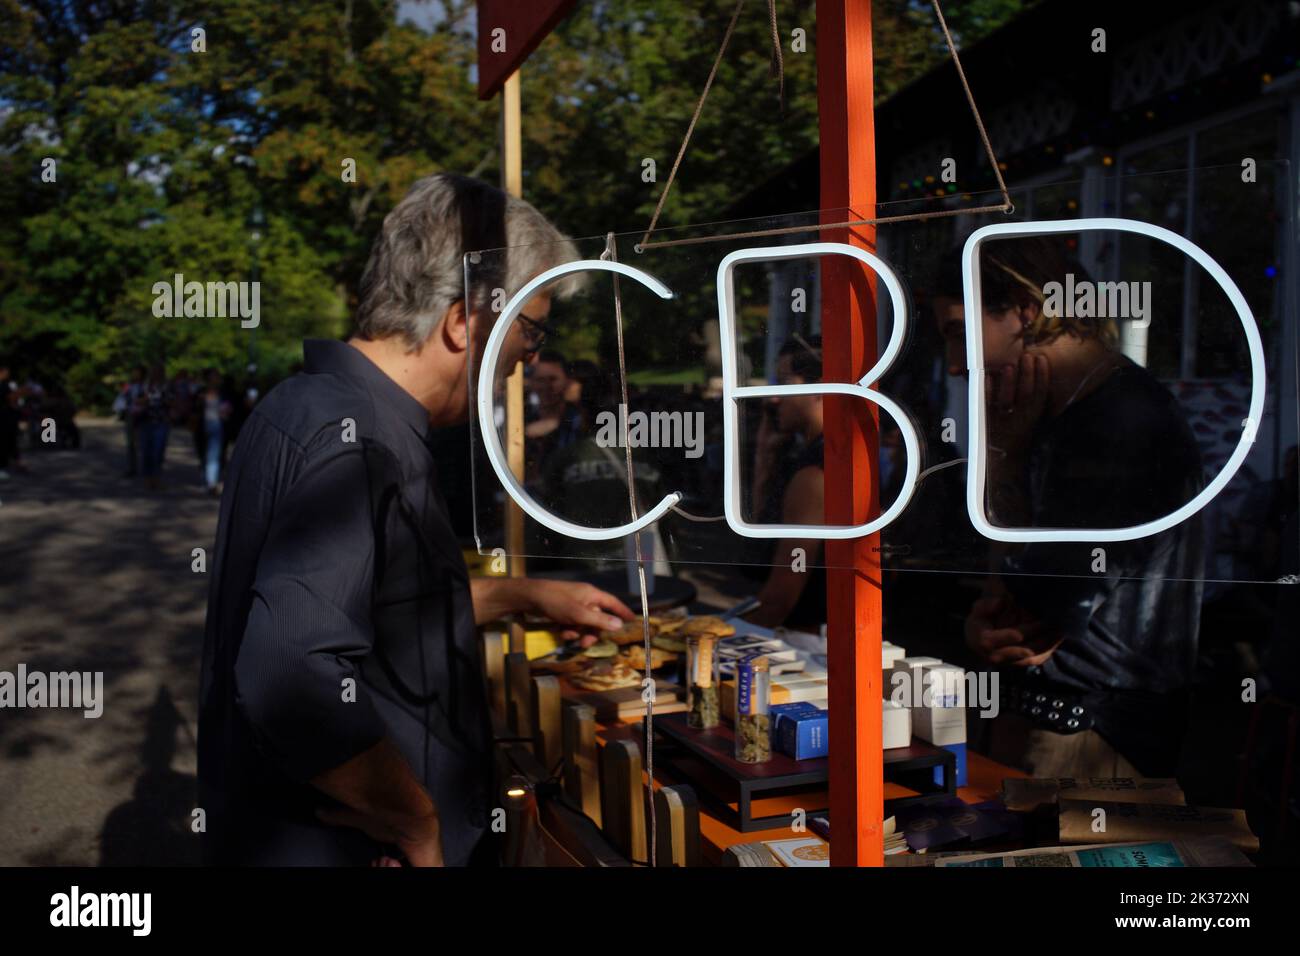 Panneau CBD lumineux sur un stand vendant une gamme de produits CBD (cannididiol) à l'extérieur du café Rosa bonheur, dans le parc des Buttes Chaumont de Paris, Paris, France Banque D'Images